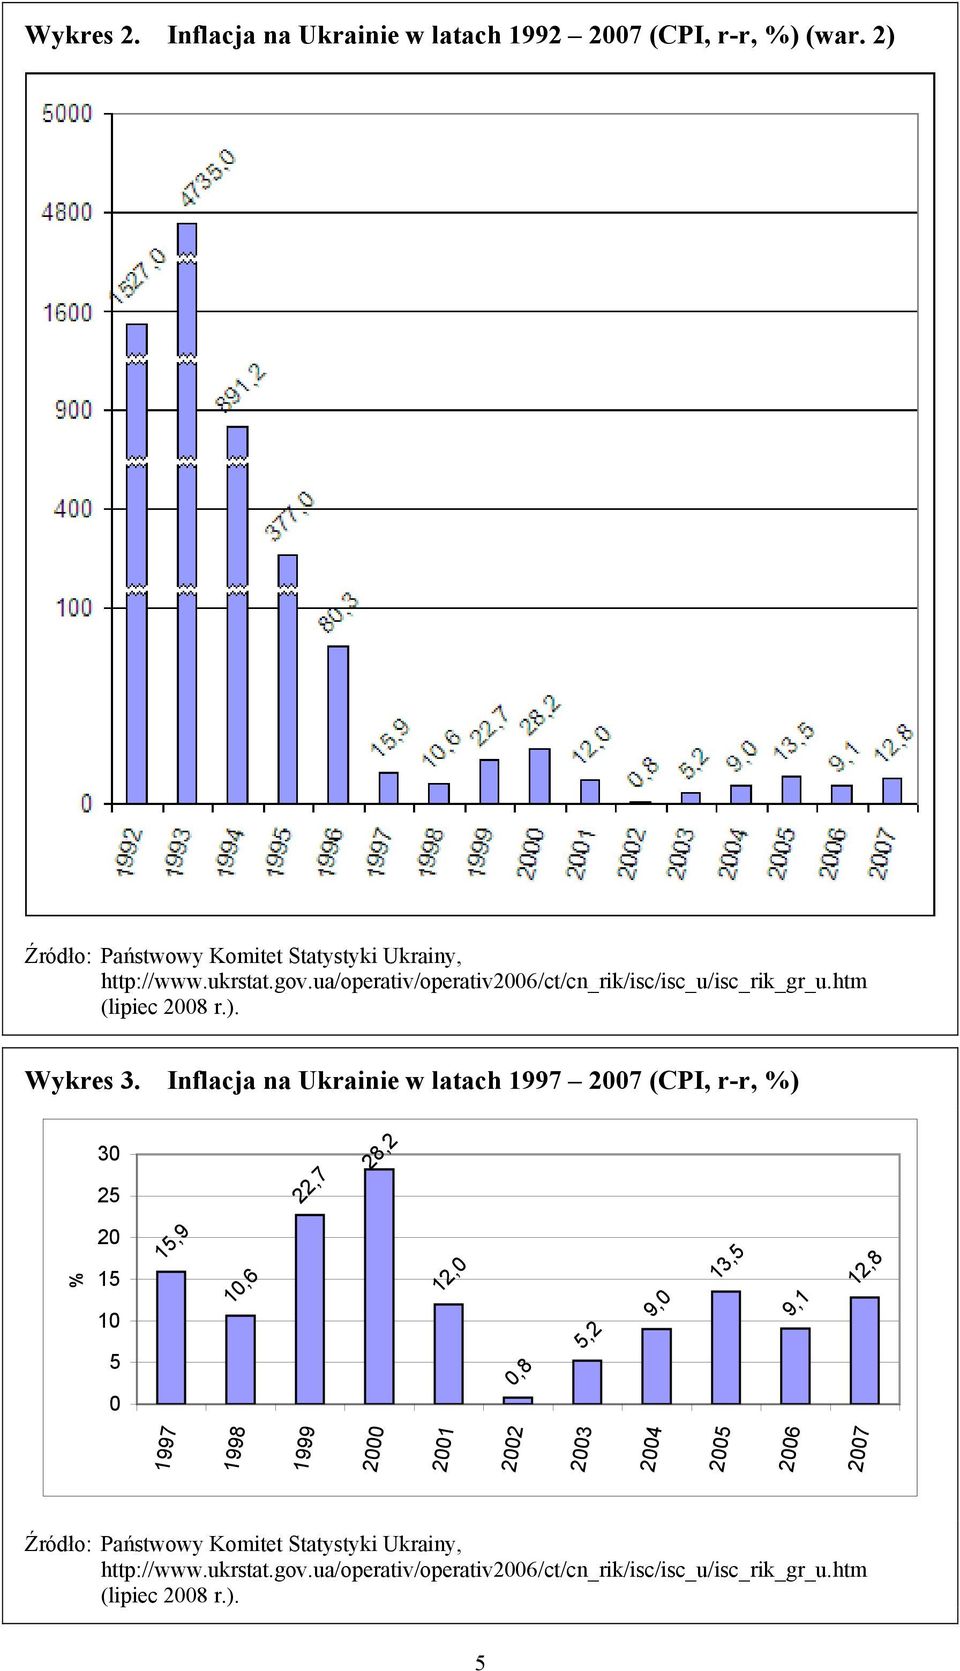 Inflacja na Ukrainie w latach 1997 2007 (CPI, r-r, %) 30 25 22,7 28,2 % 20 15 10 15,9 10,6 12,0 9,0 13,5 9,1 12,8 5,2 5 0,8 0 1997 1998 1999